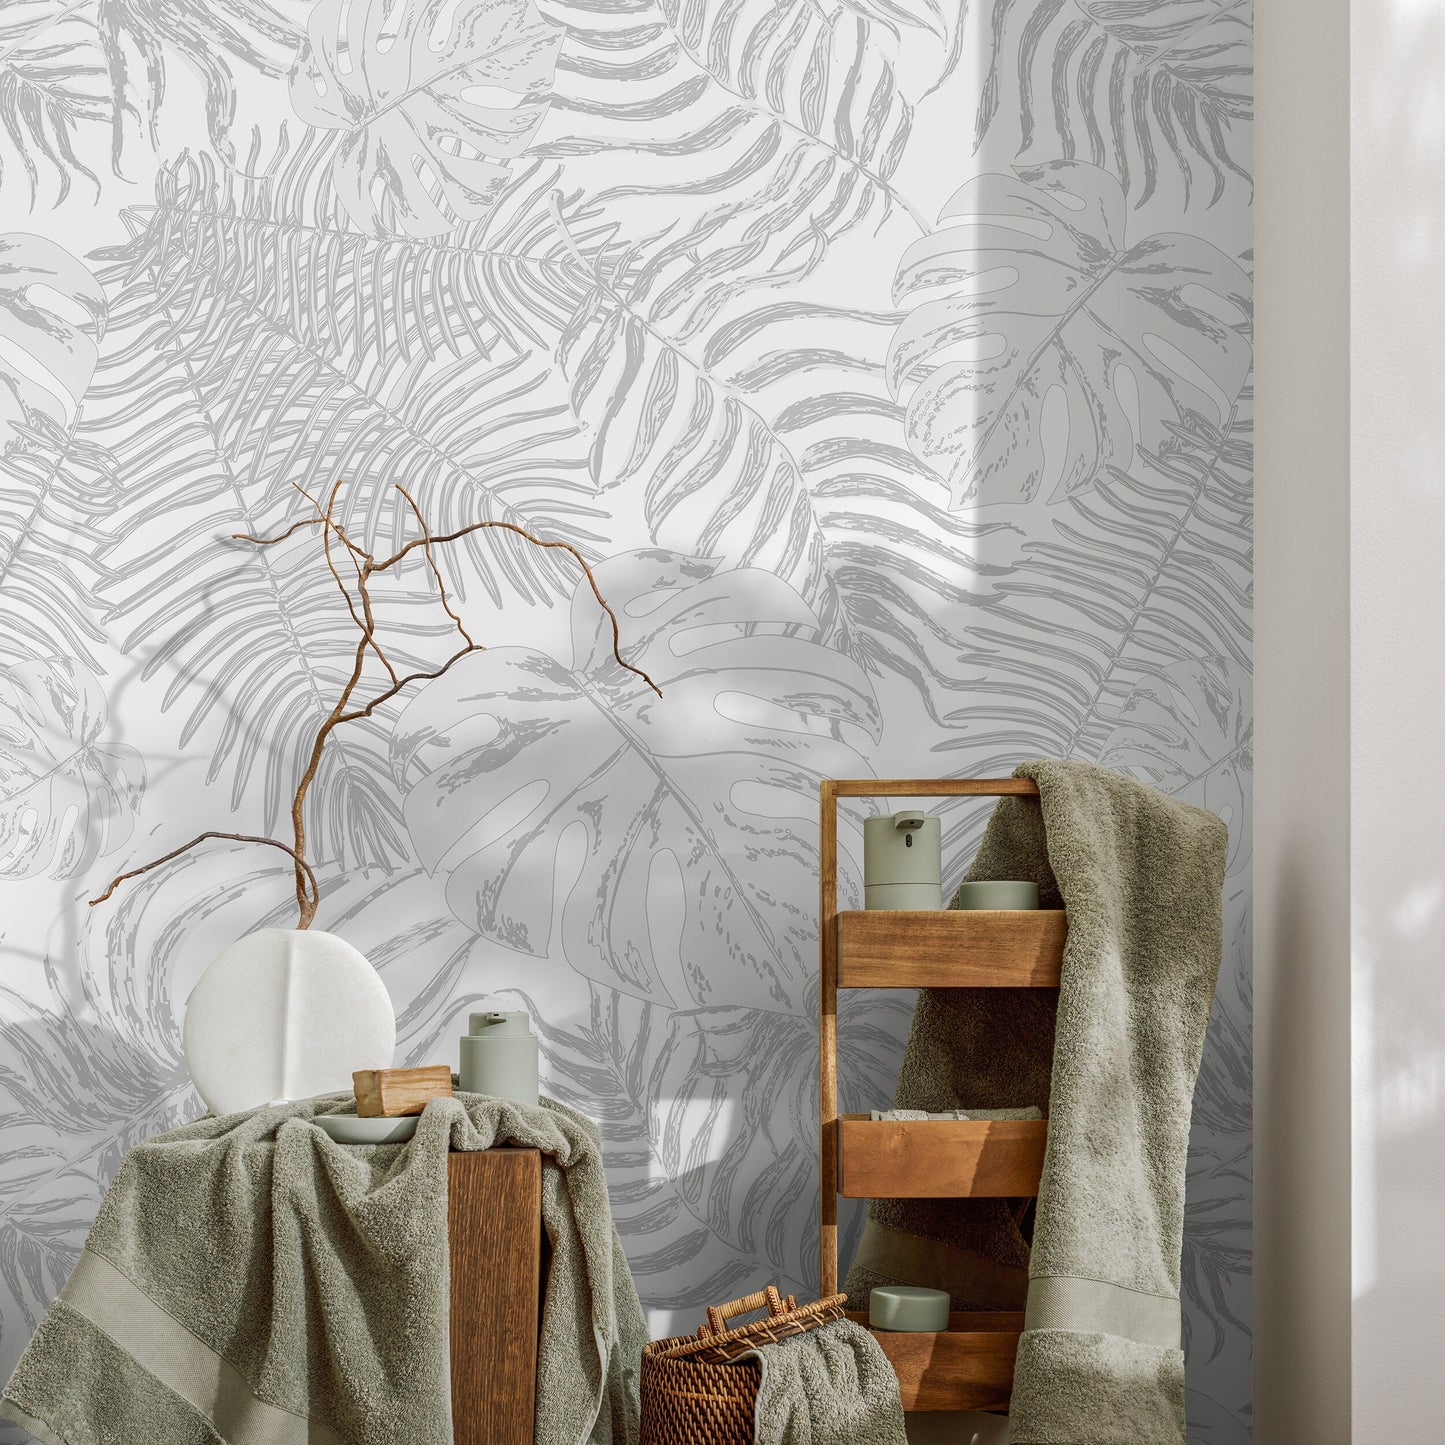 Removable Wallpaper, Tropical Wallpaper, Leaf Wallpaper, Leaves Wallpaper, Wall Paper, Peel and Stick Wallpaper, Wallpaper - A561